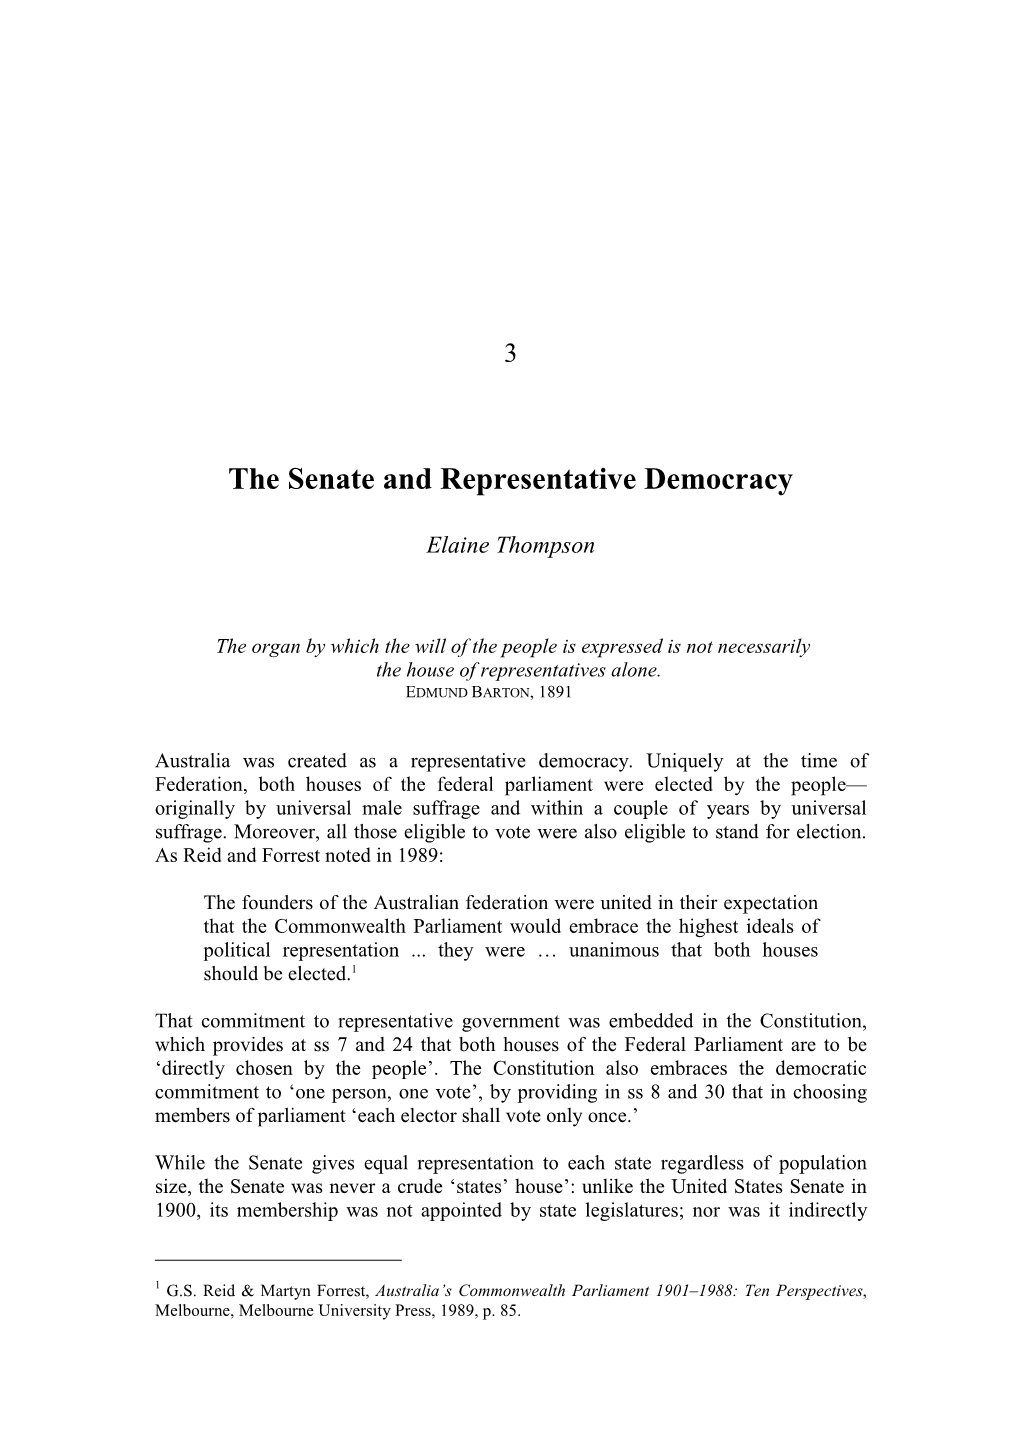 The Senate and Representative Democracy